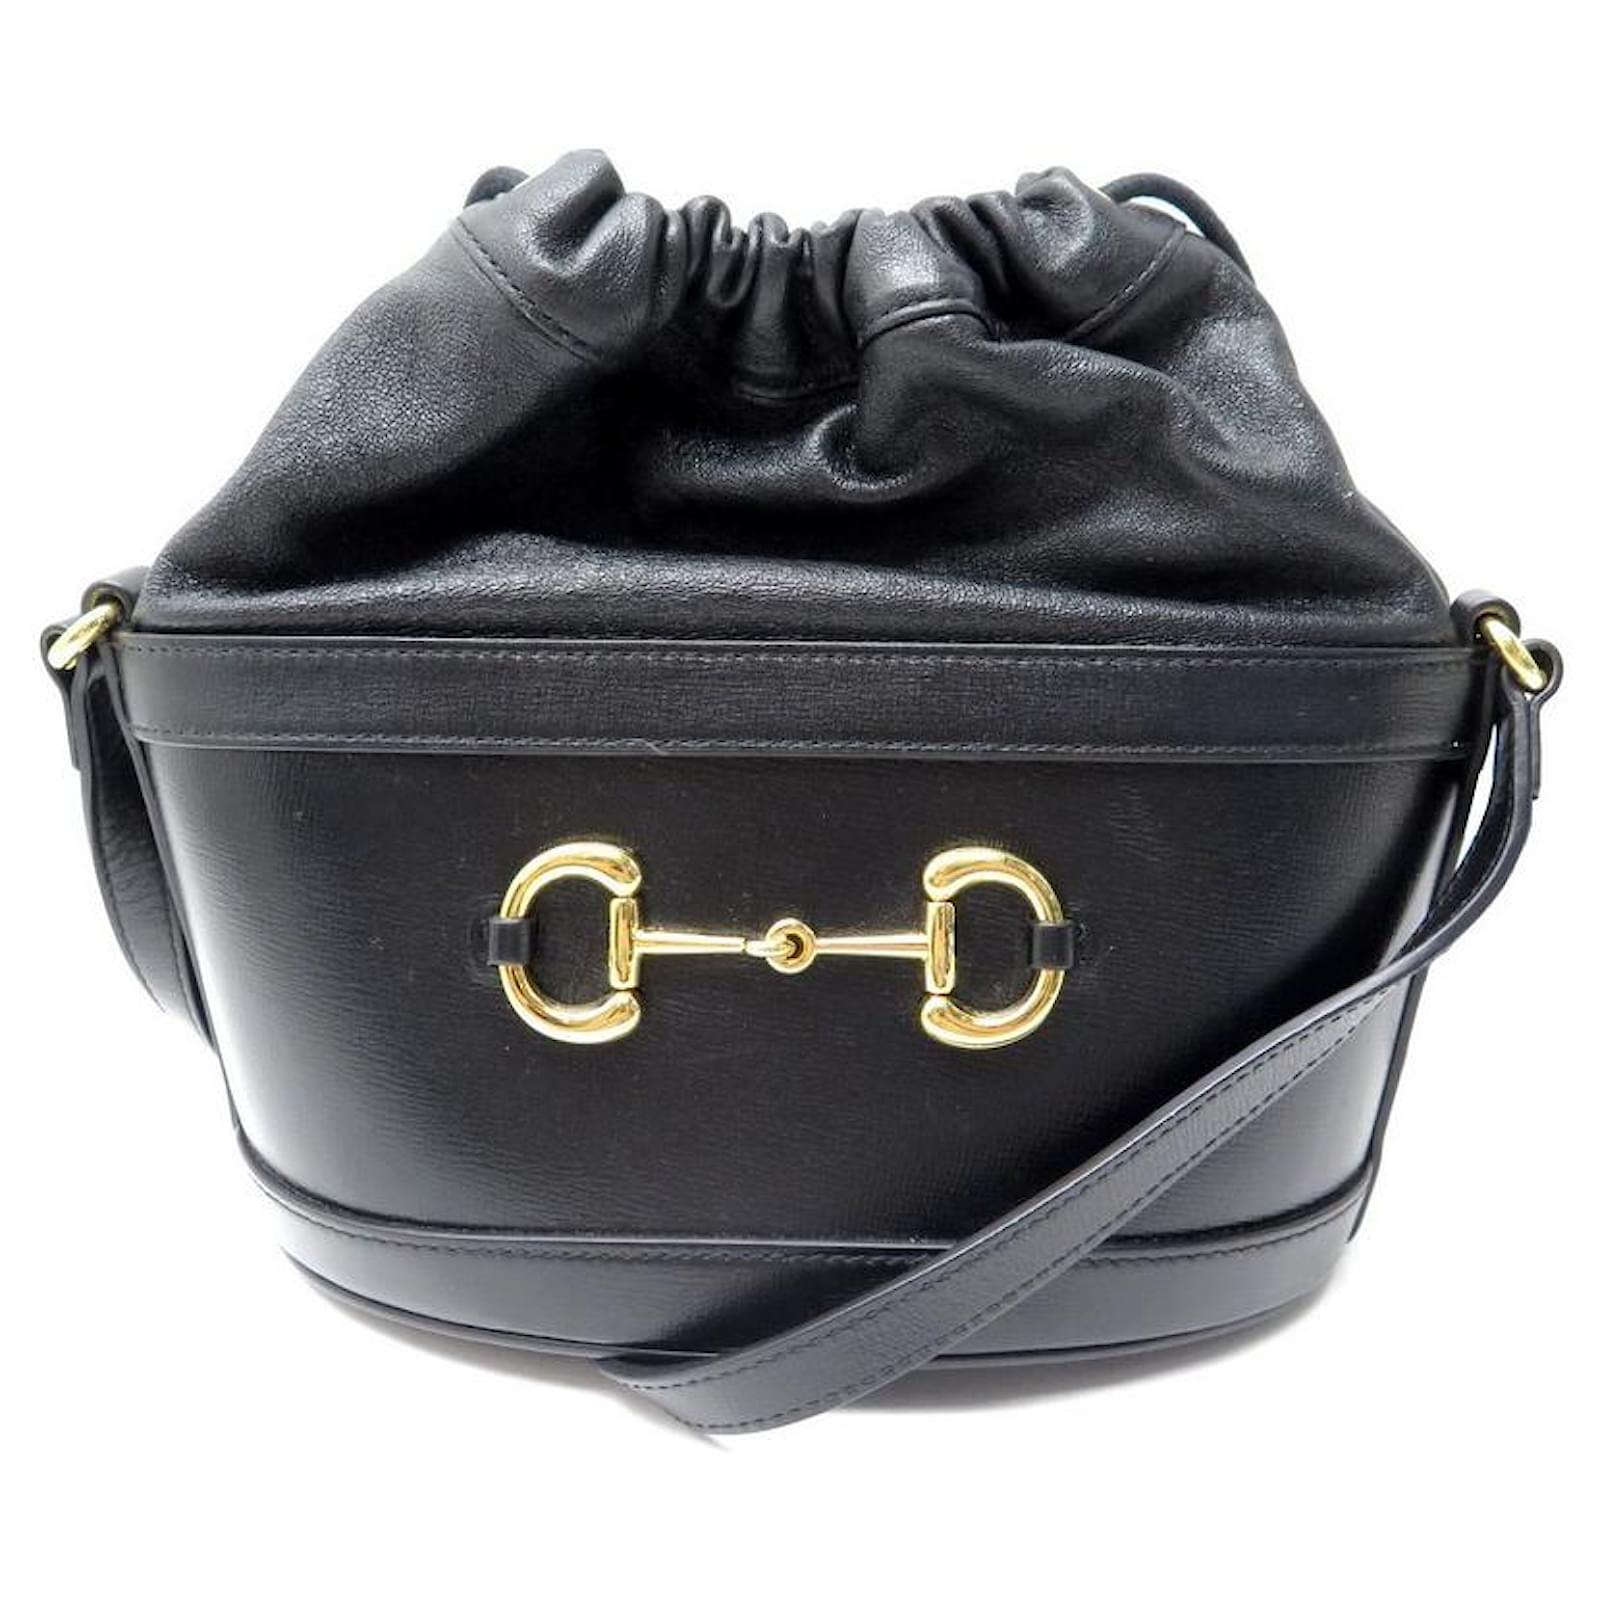 A Closer Look At the Gucci 1955 Horsebit Shoulder Bag - PurseBlog